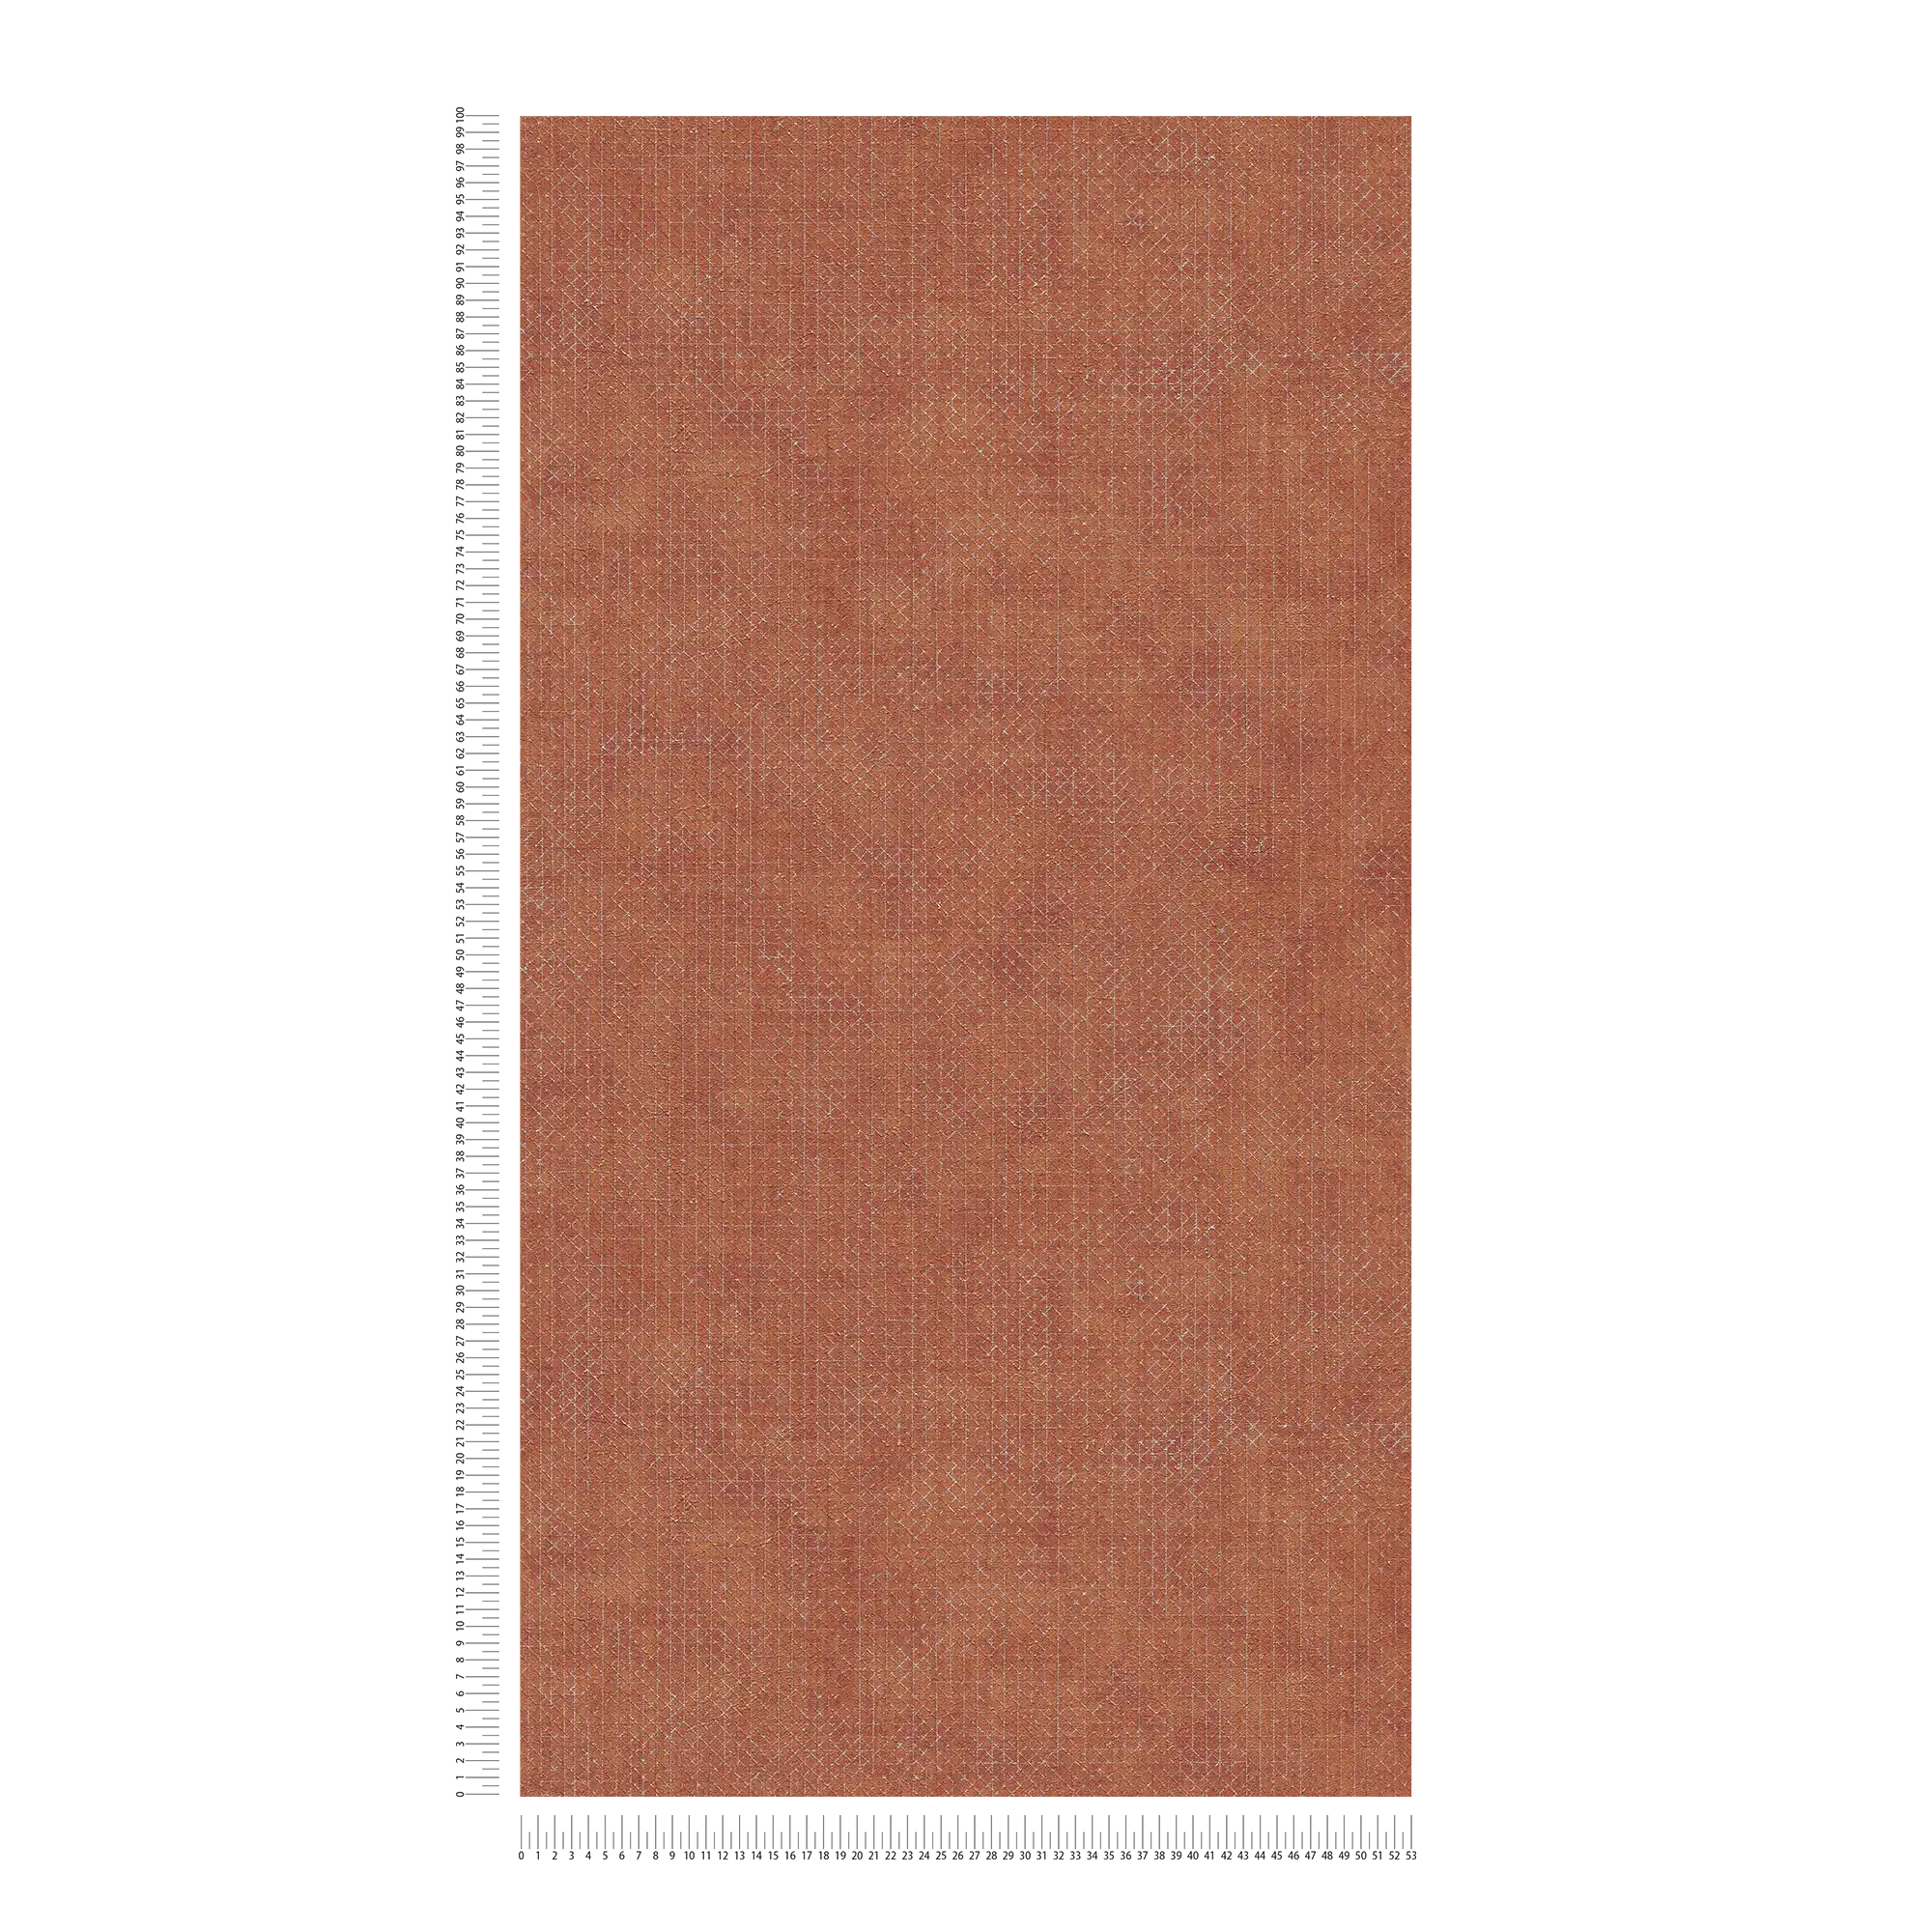             Ziegelrote Tapete mit silbernem Strukturmuster – Orange, Rot
        